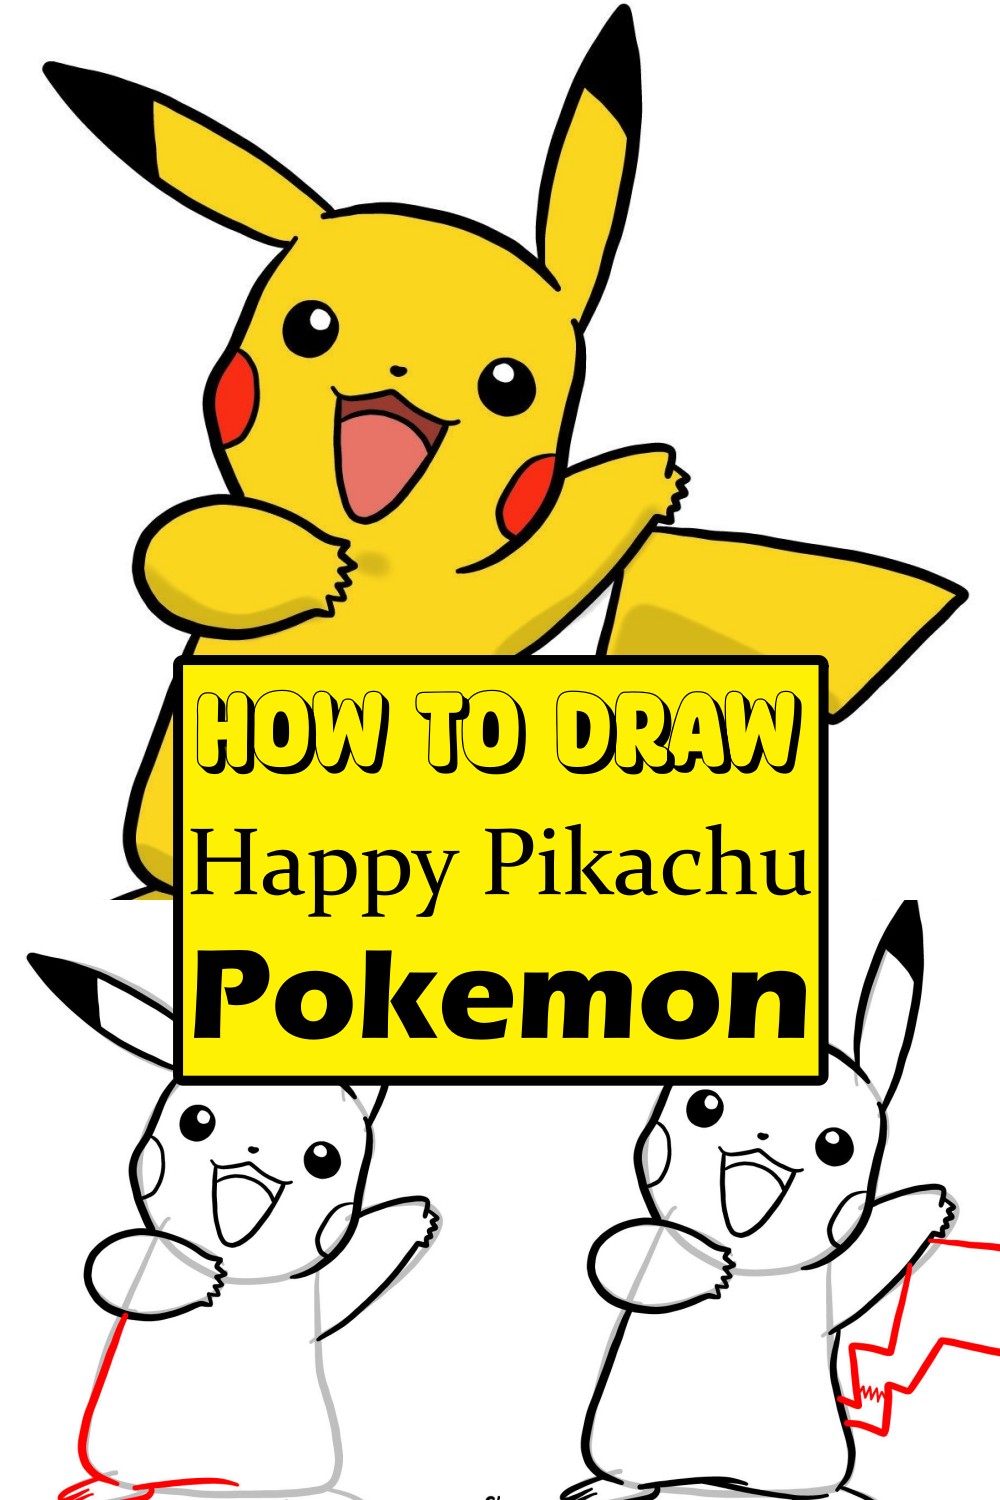 How To Draw Happy Pikachu Pokemon